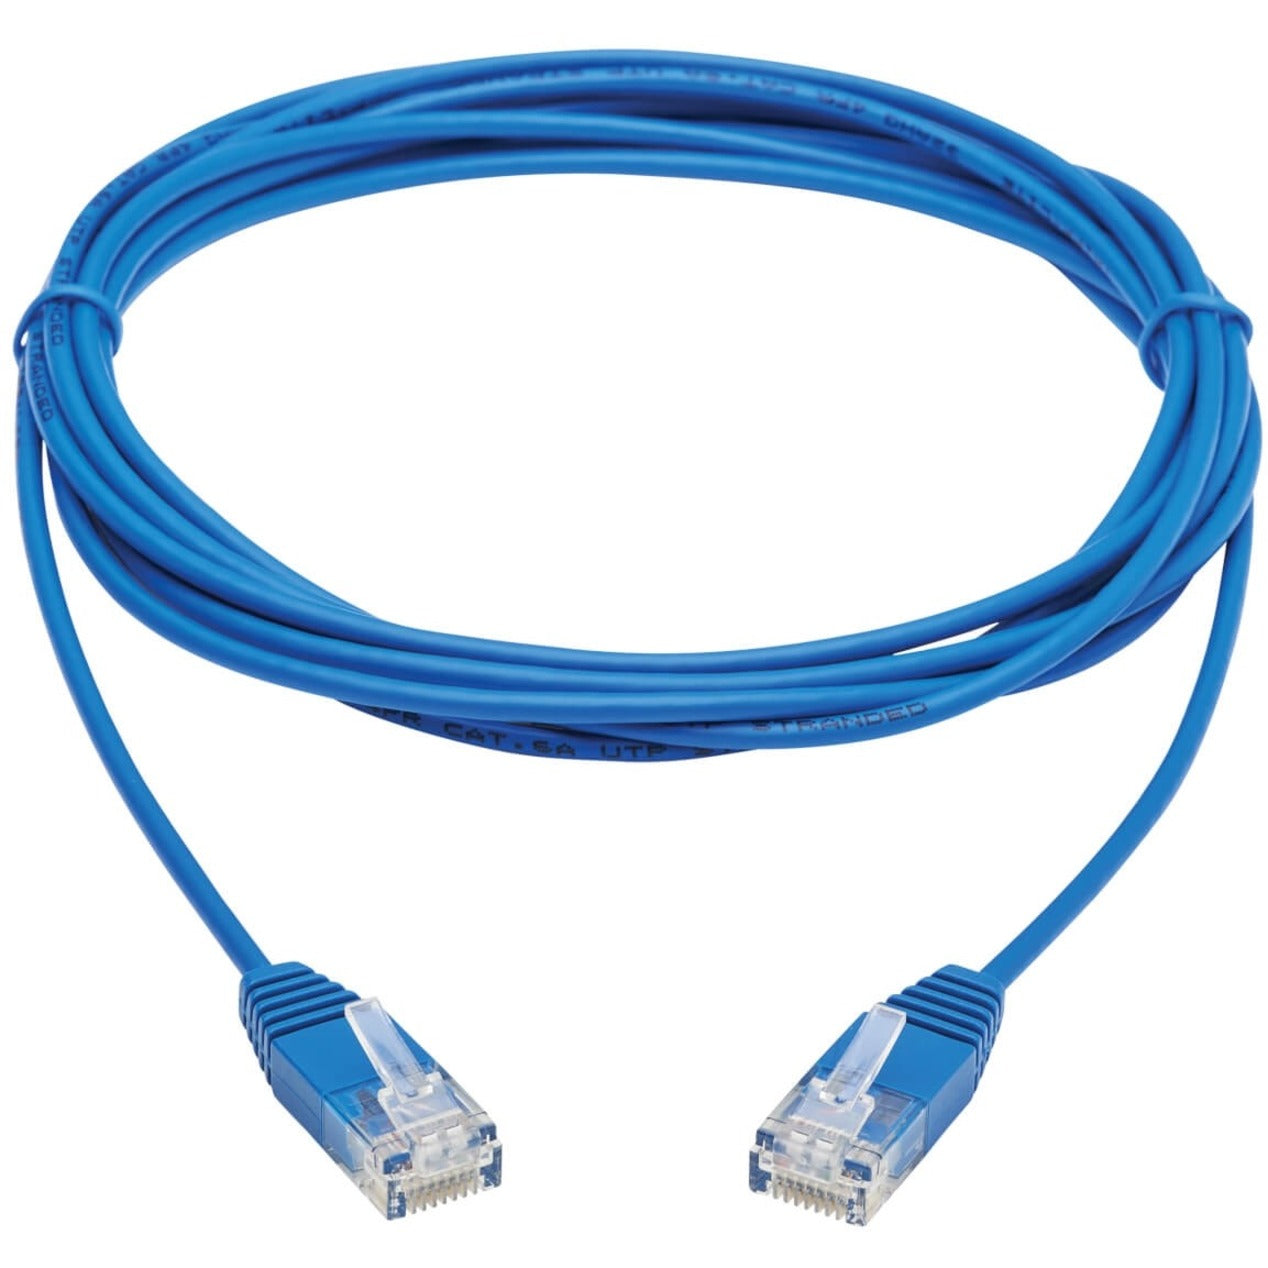 Tripp Lite N261-UR10-BL Cat6a 10G Certified Molded Ultra-Slim UTP Ethernet Cable, Blue, 10ft.